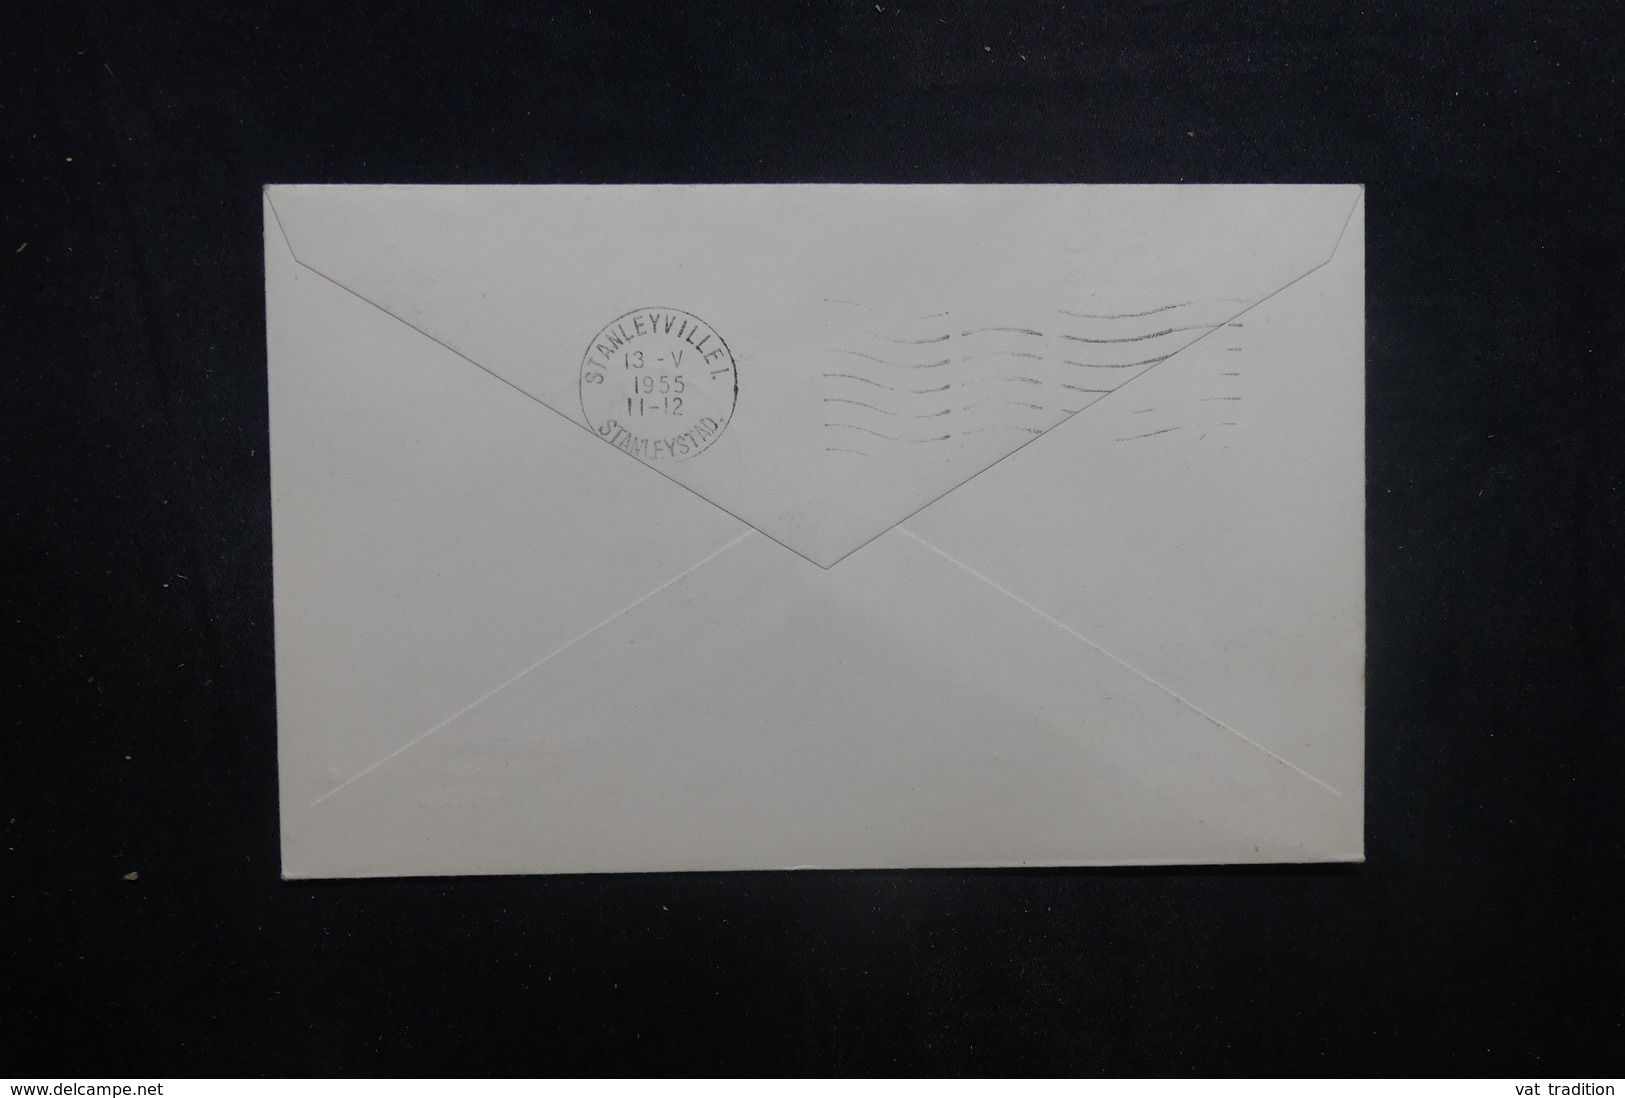 CONGO BELGE - Enveloppe 1er Vol  Paulis / Stanleyville En 1956 - L 40472 - Lettres & Documents